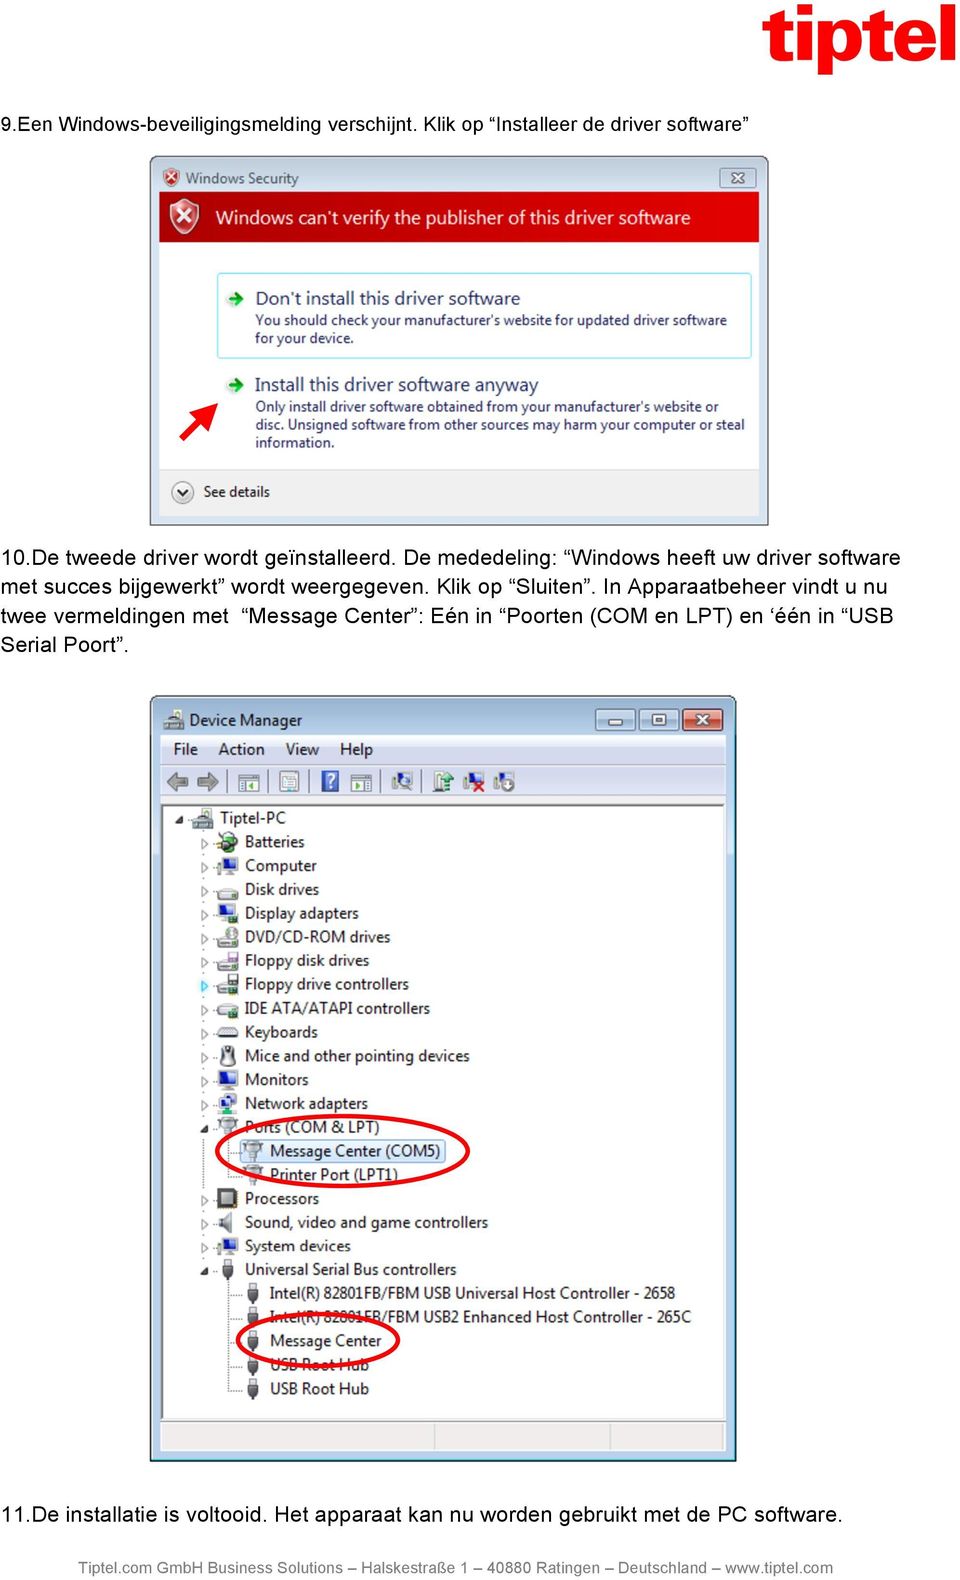 De mededeling: Windows heeft uw driver software met succes bijgewerkt wordt weergegeven. Klik op Sluiten.